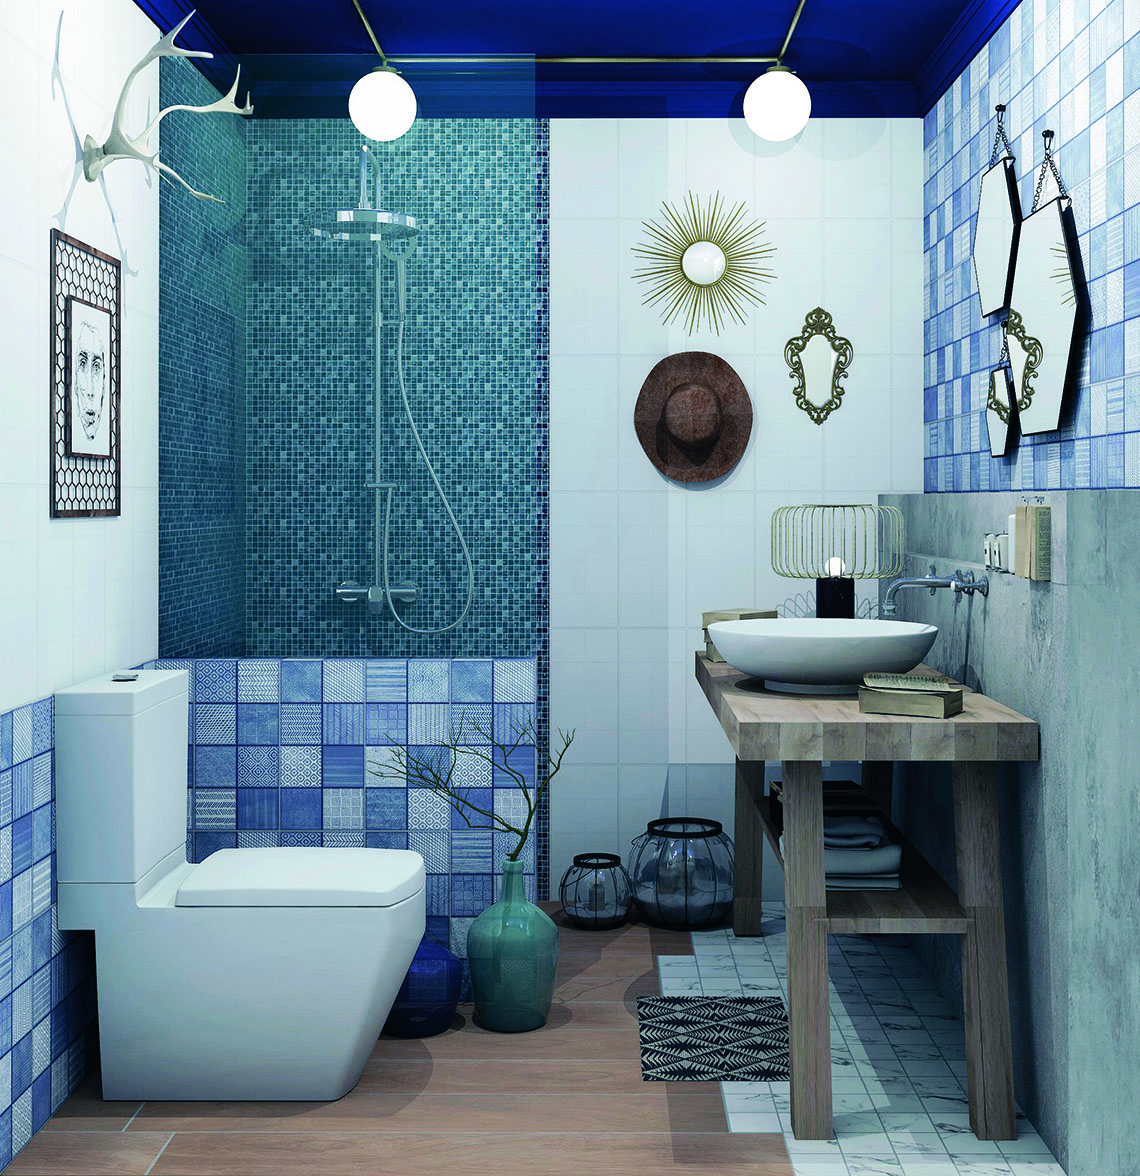 รูปแบบห้องน้ำ indigo สวยสะดุดตามไม่ซ้ำใคร